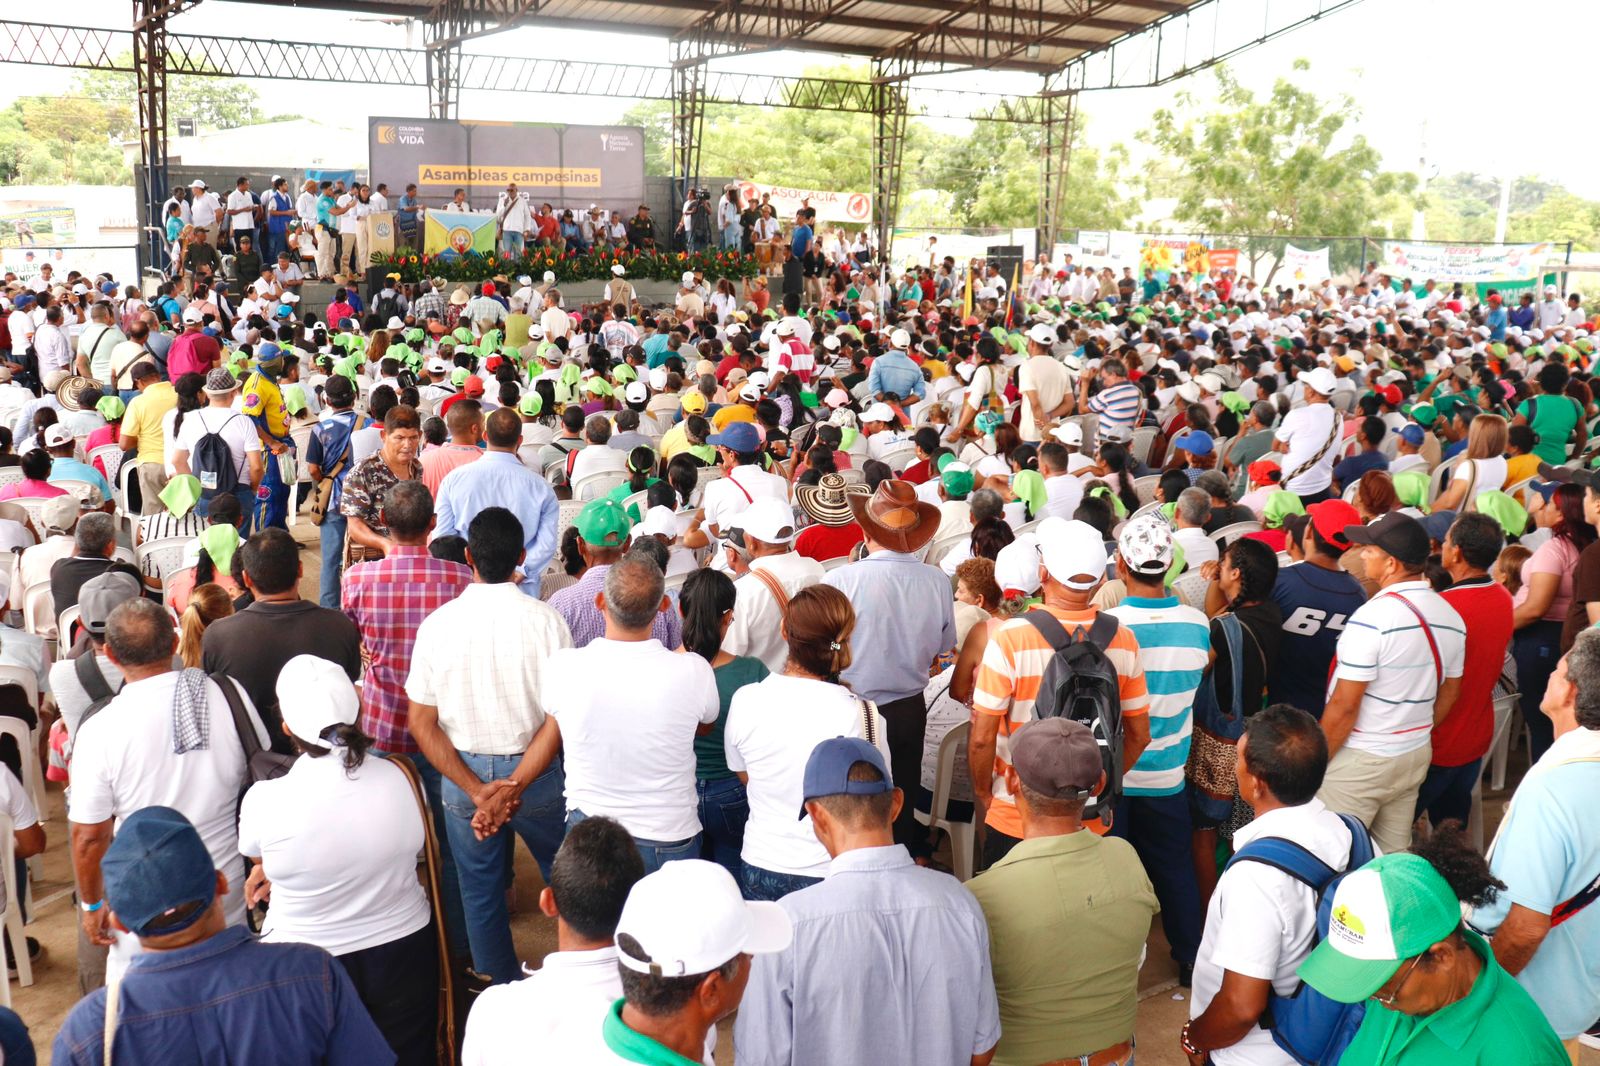 Imagen de la Asamblea Popular Campesina.